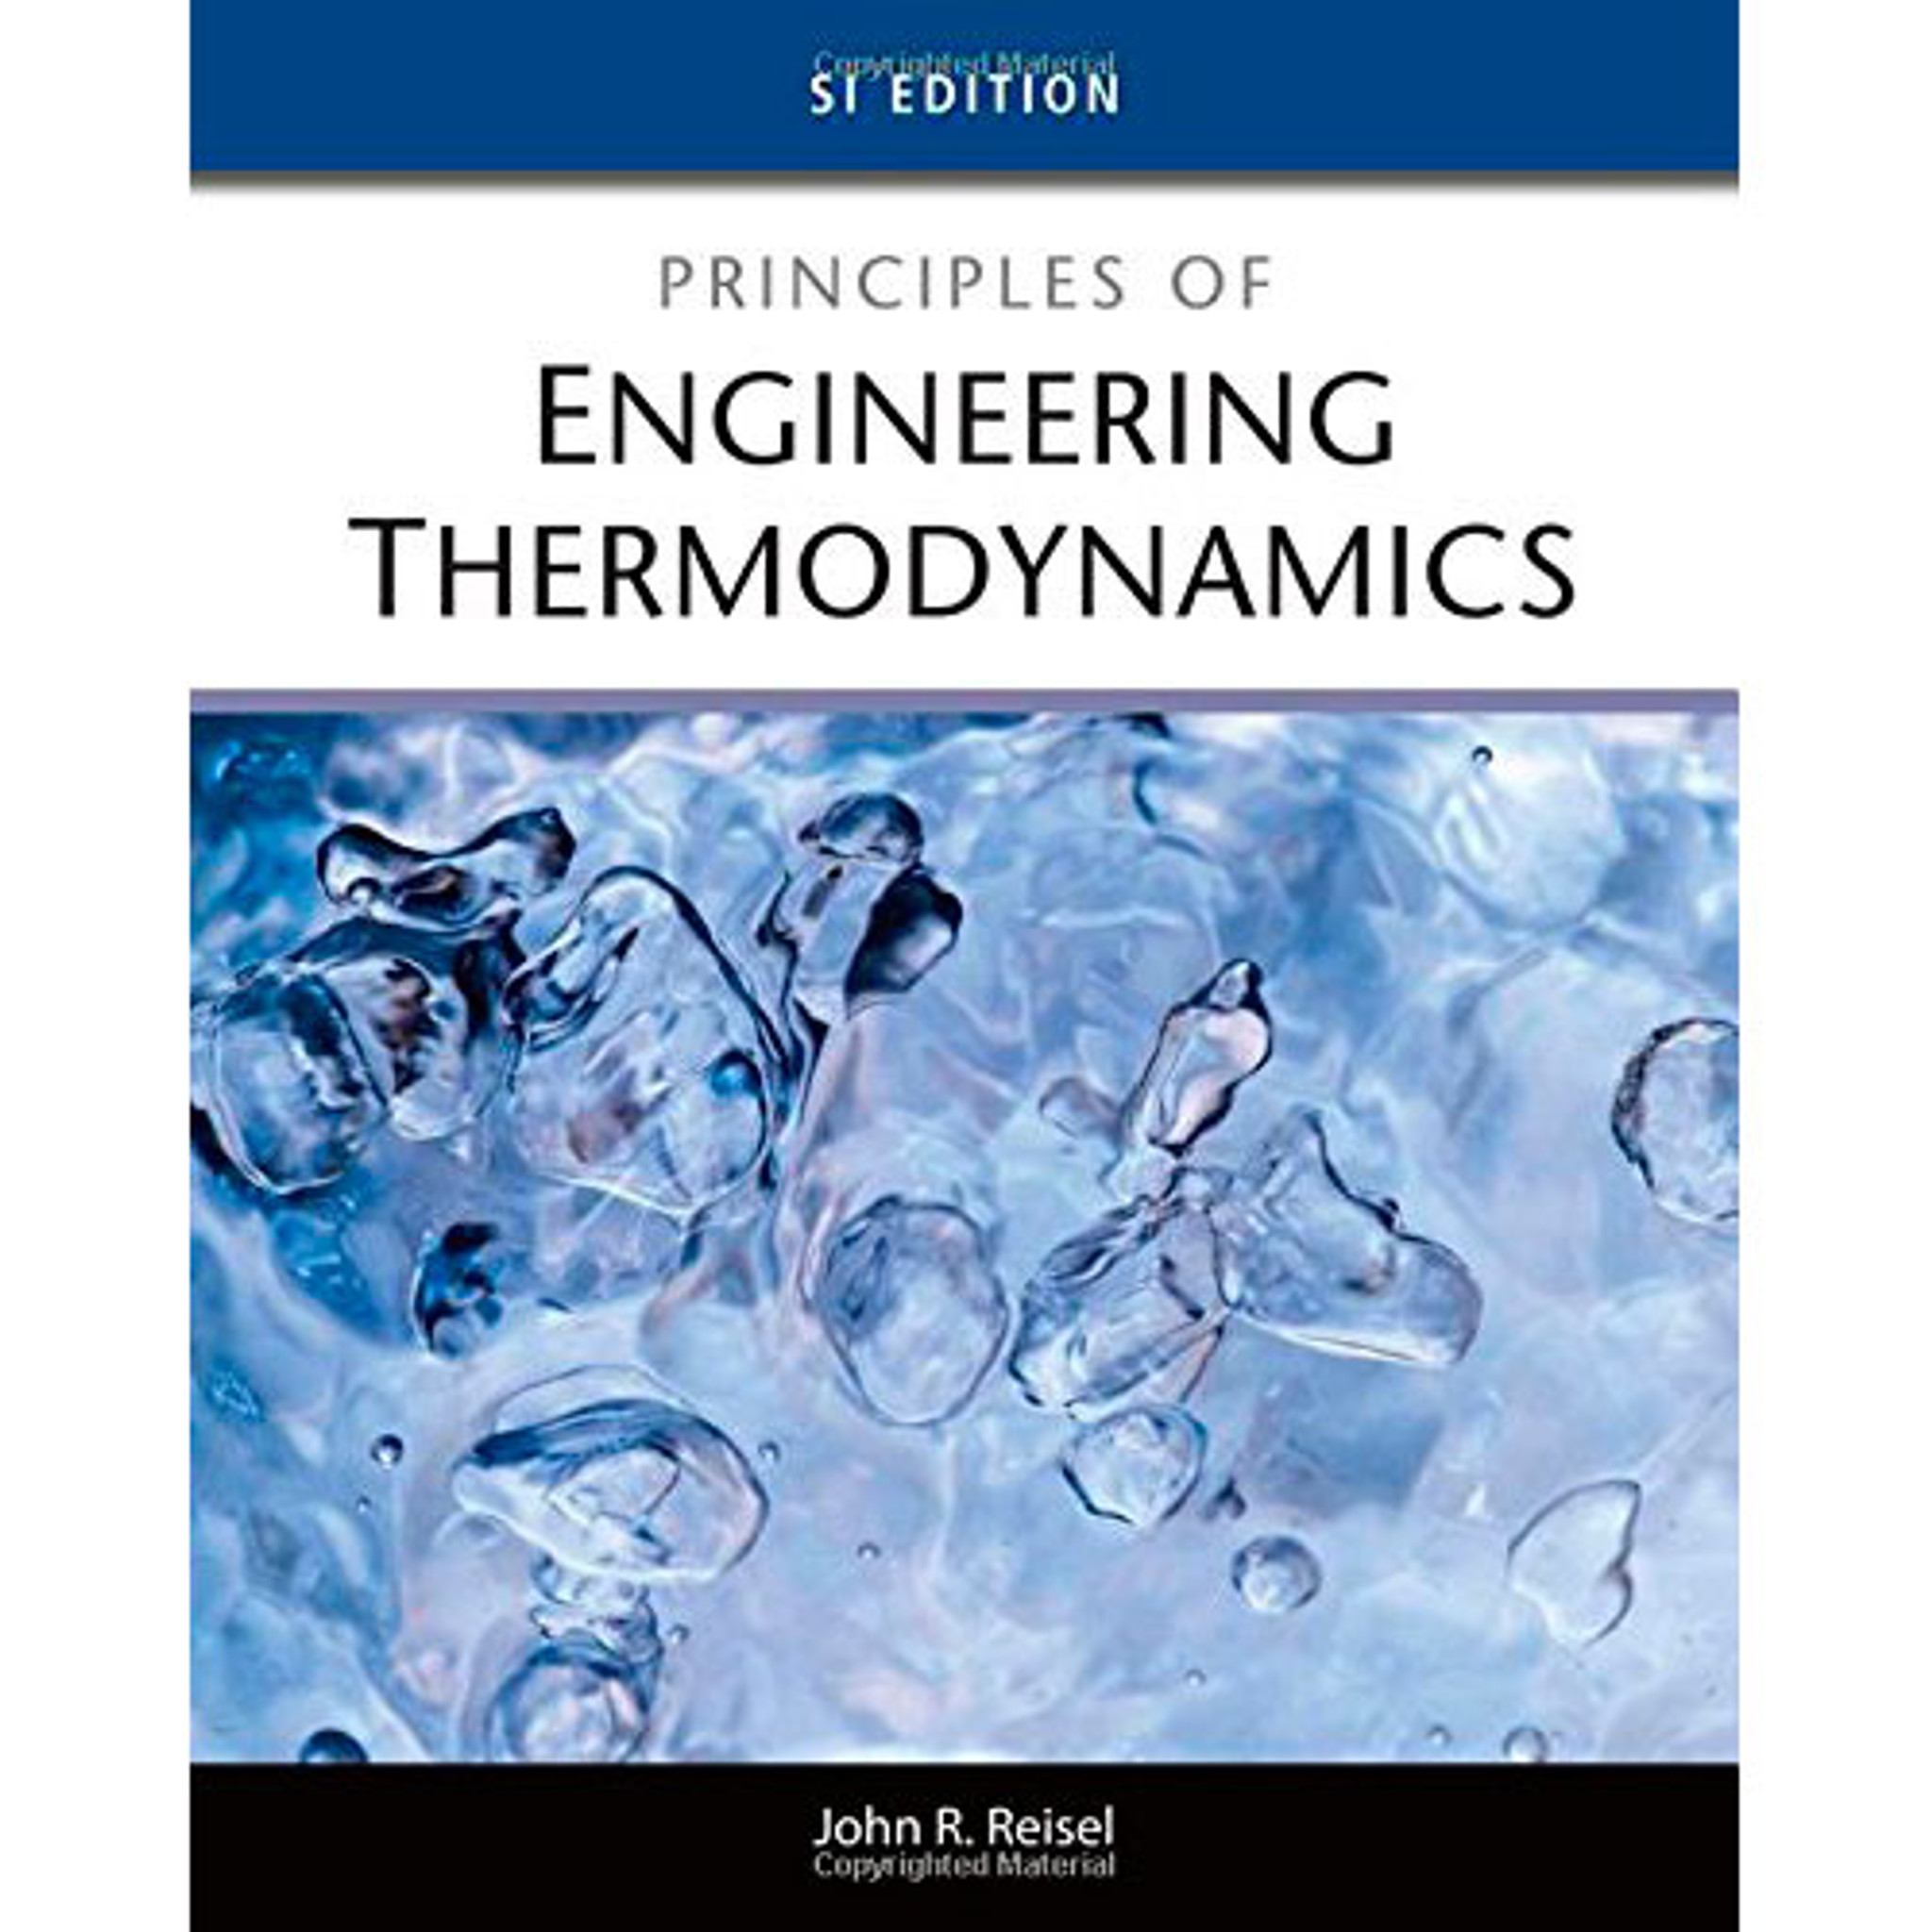 engineering thermodynamics pdf kenneth